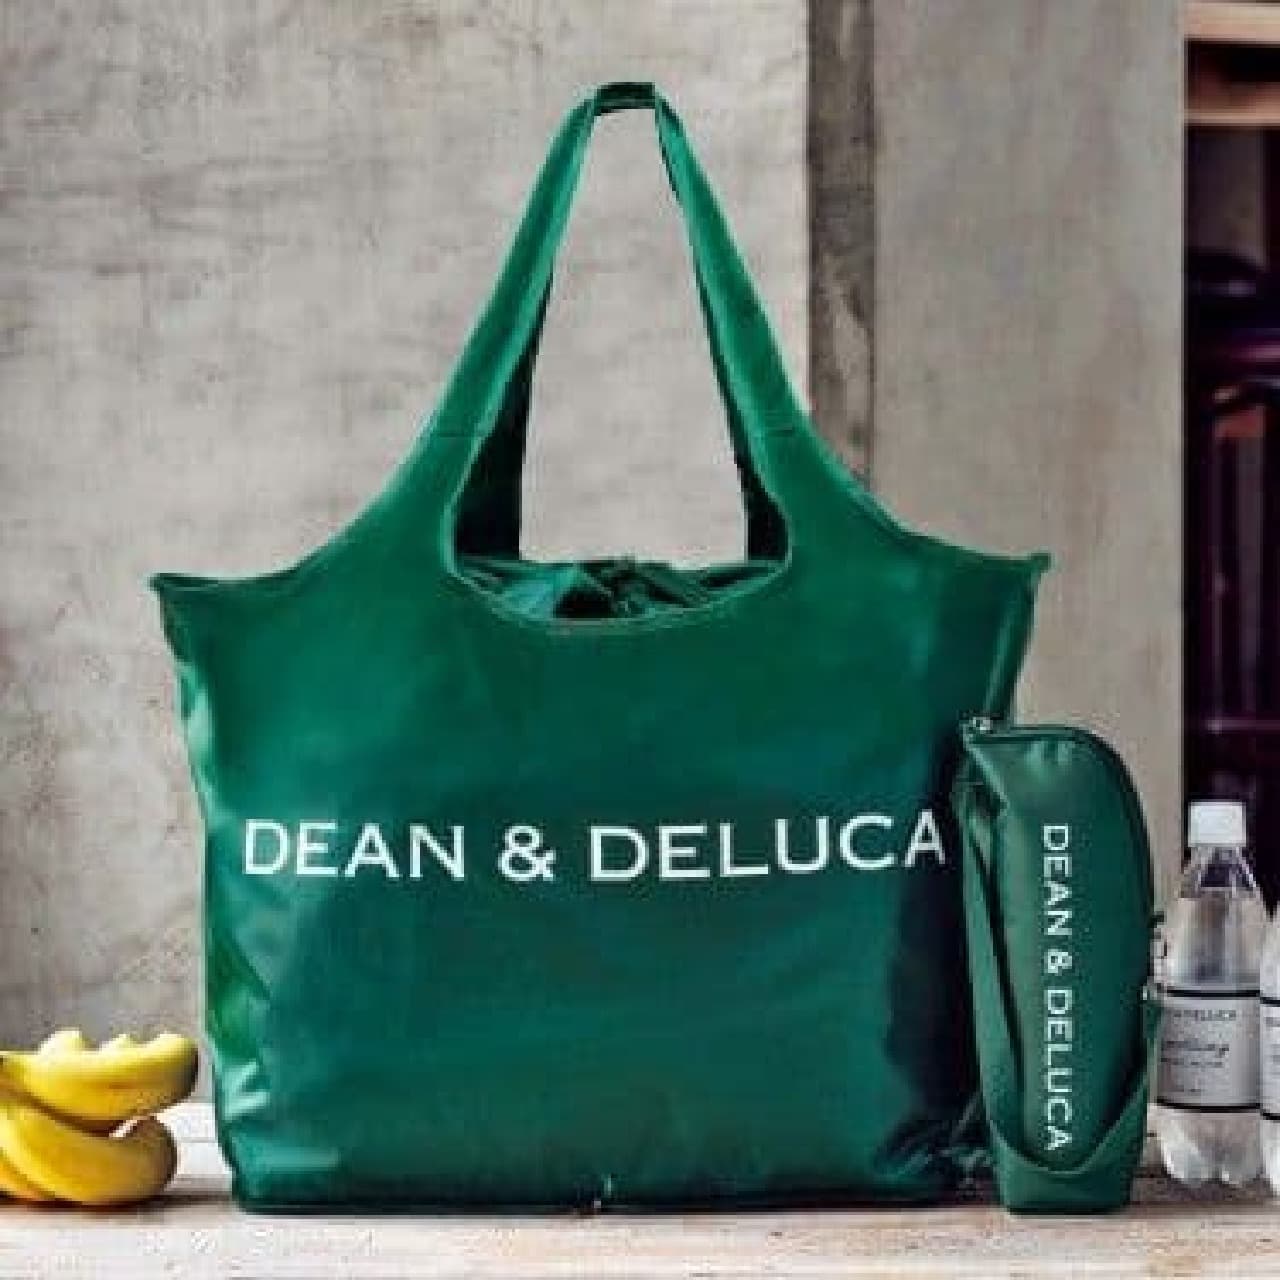 DEAN & DELUCA cash register basket shopping bag and cold bottle holder